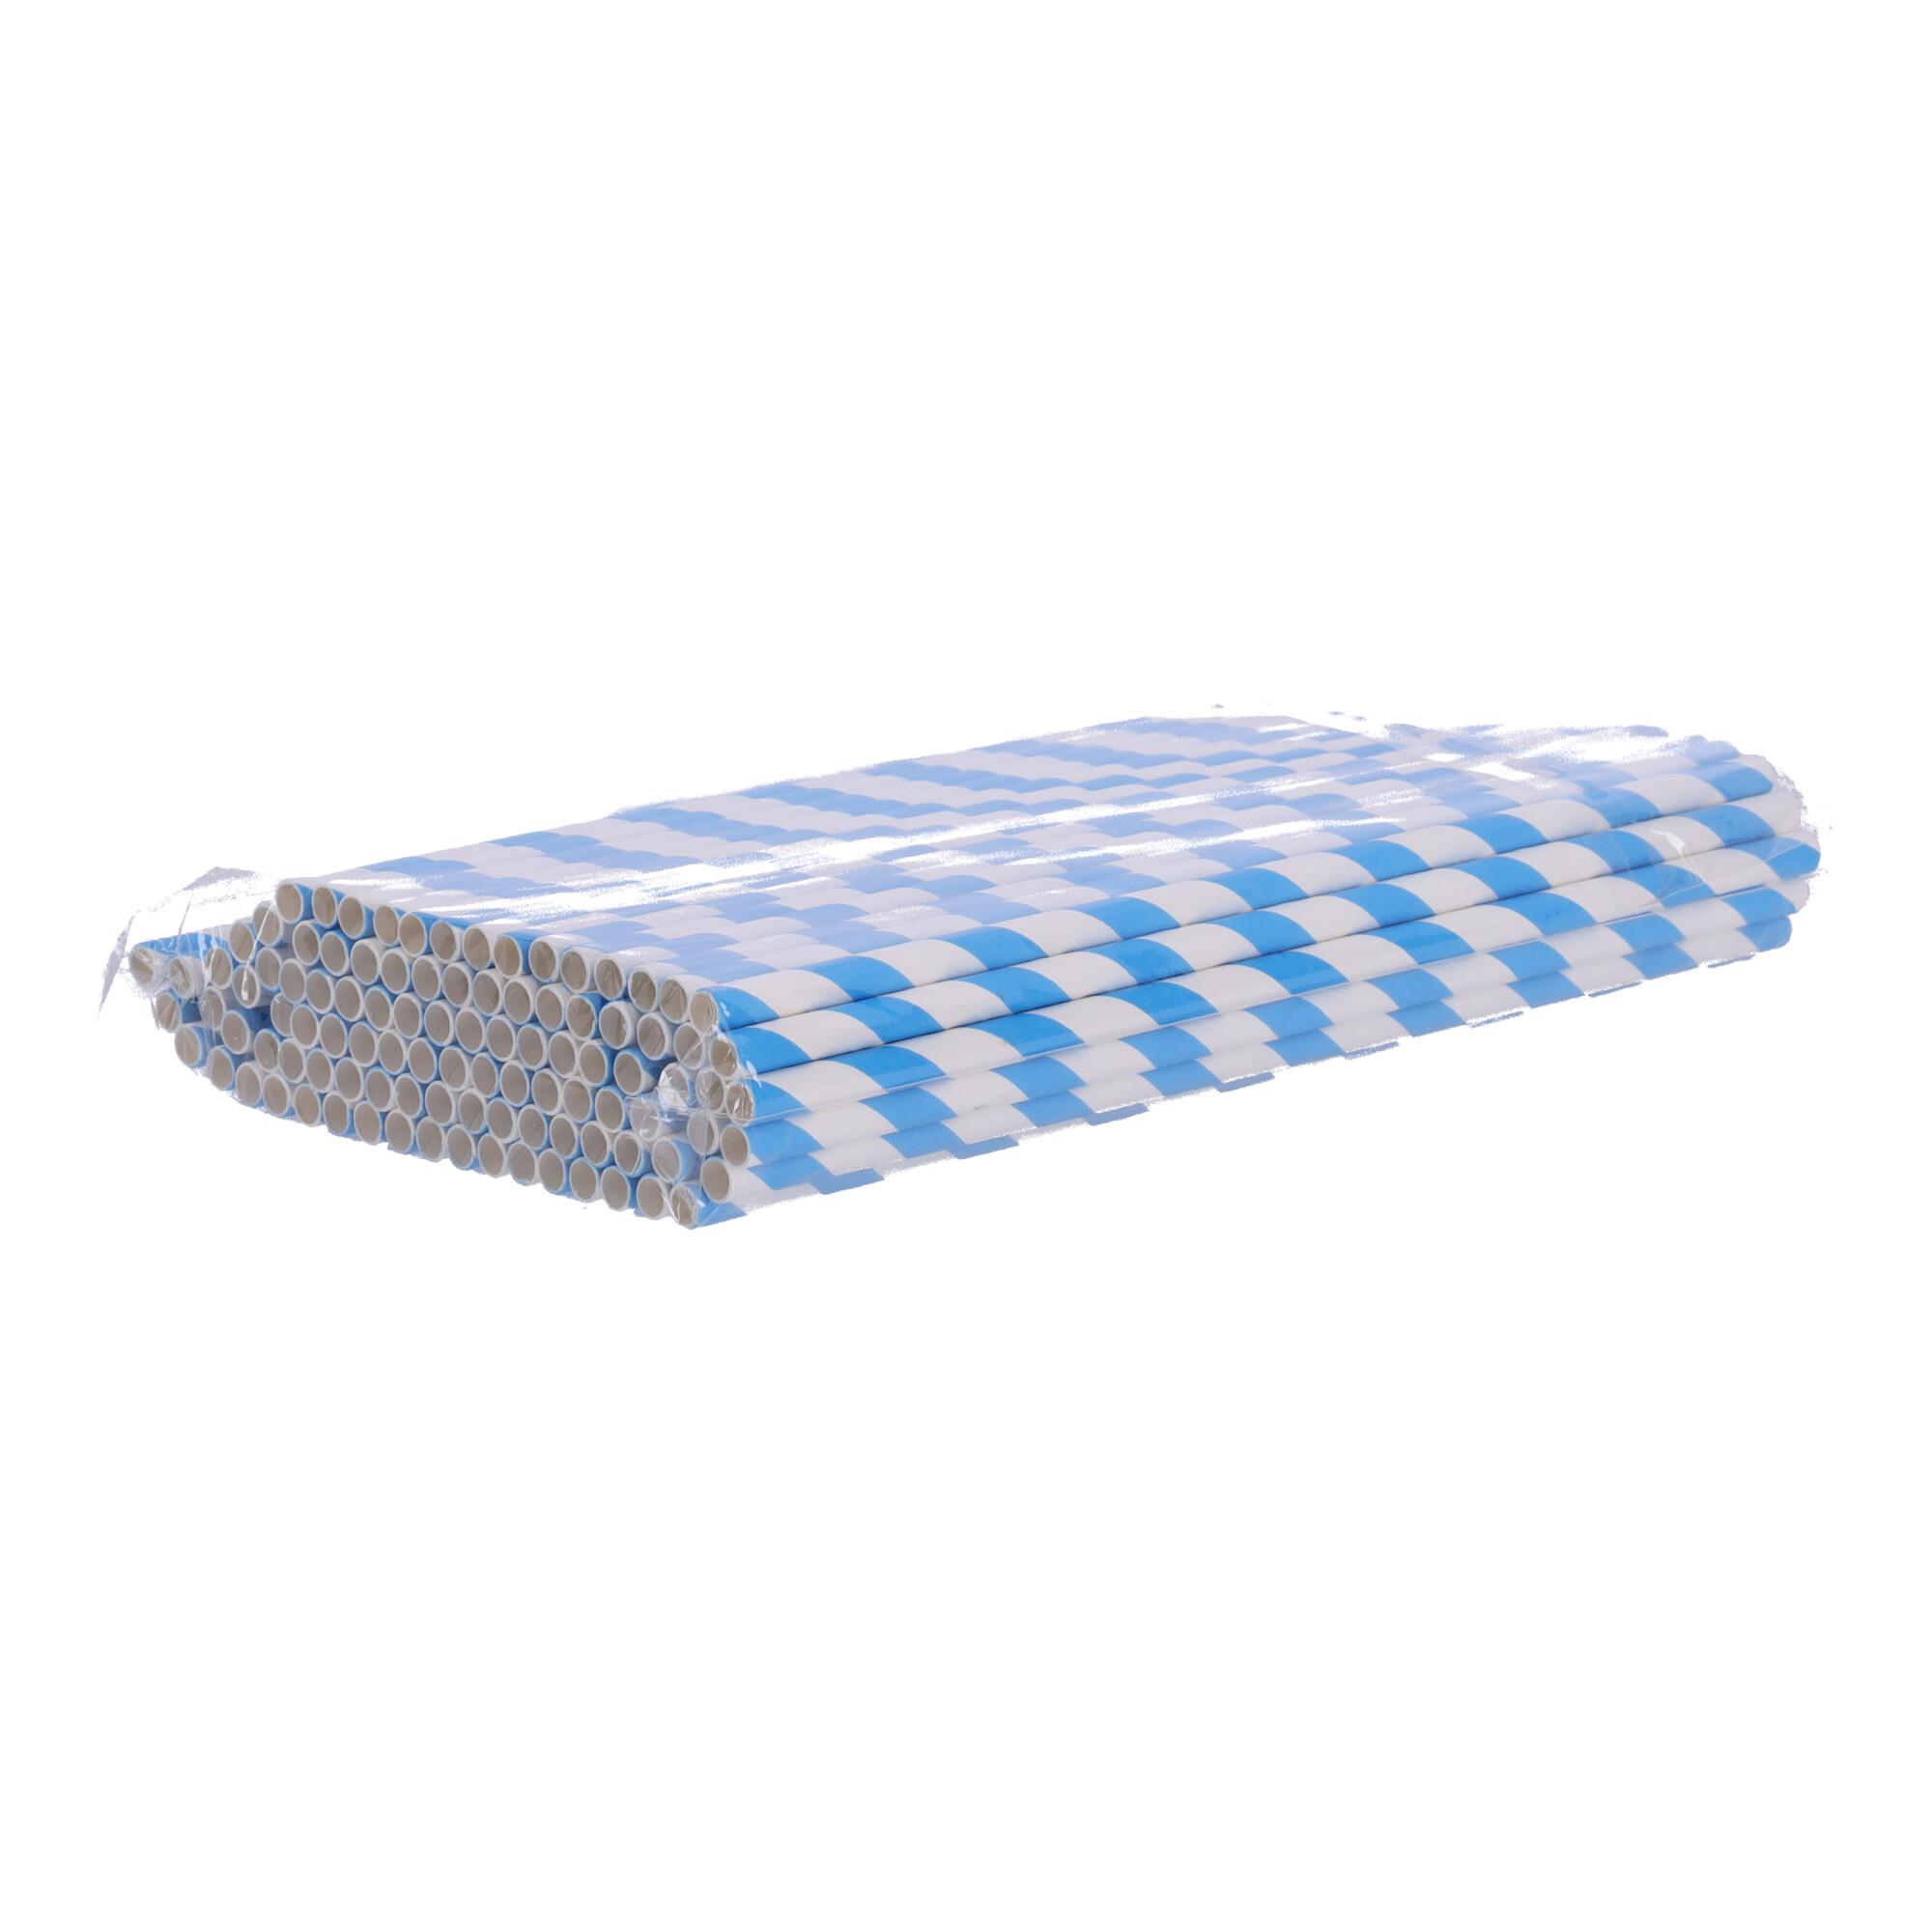 Paper straws 197mm x 6mm, 100 pcs - blue